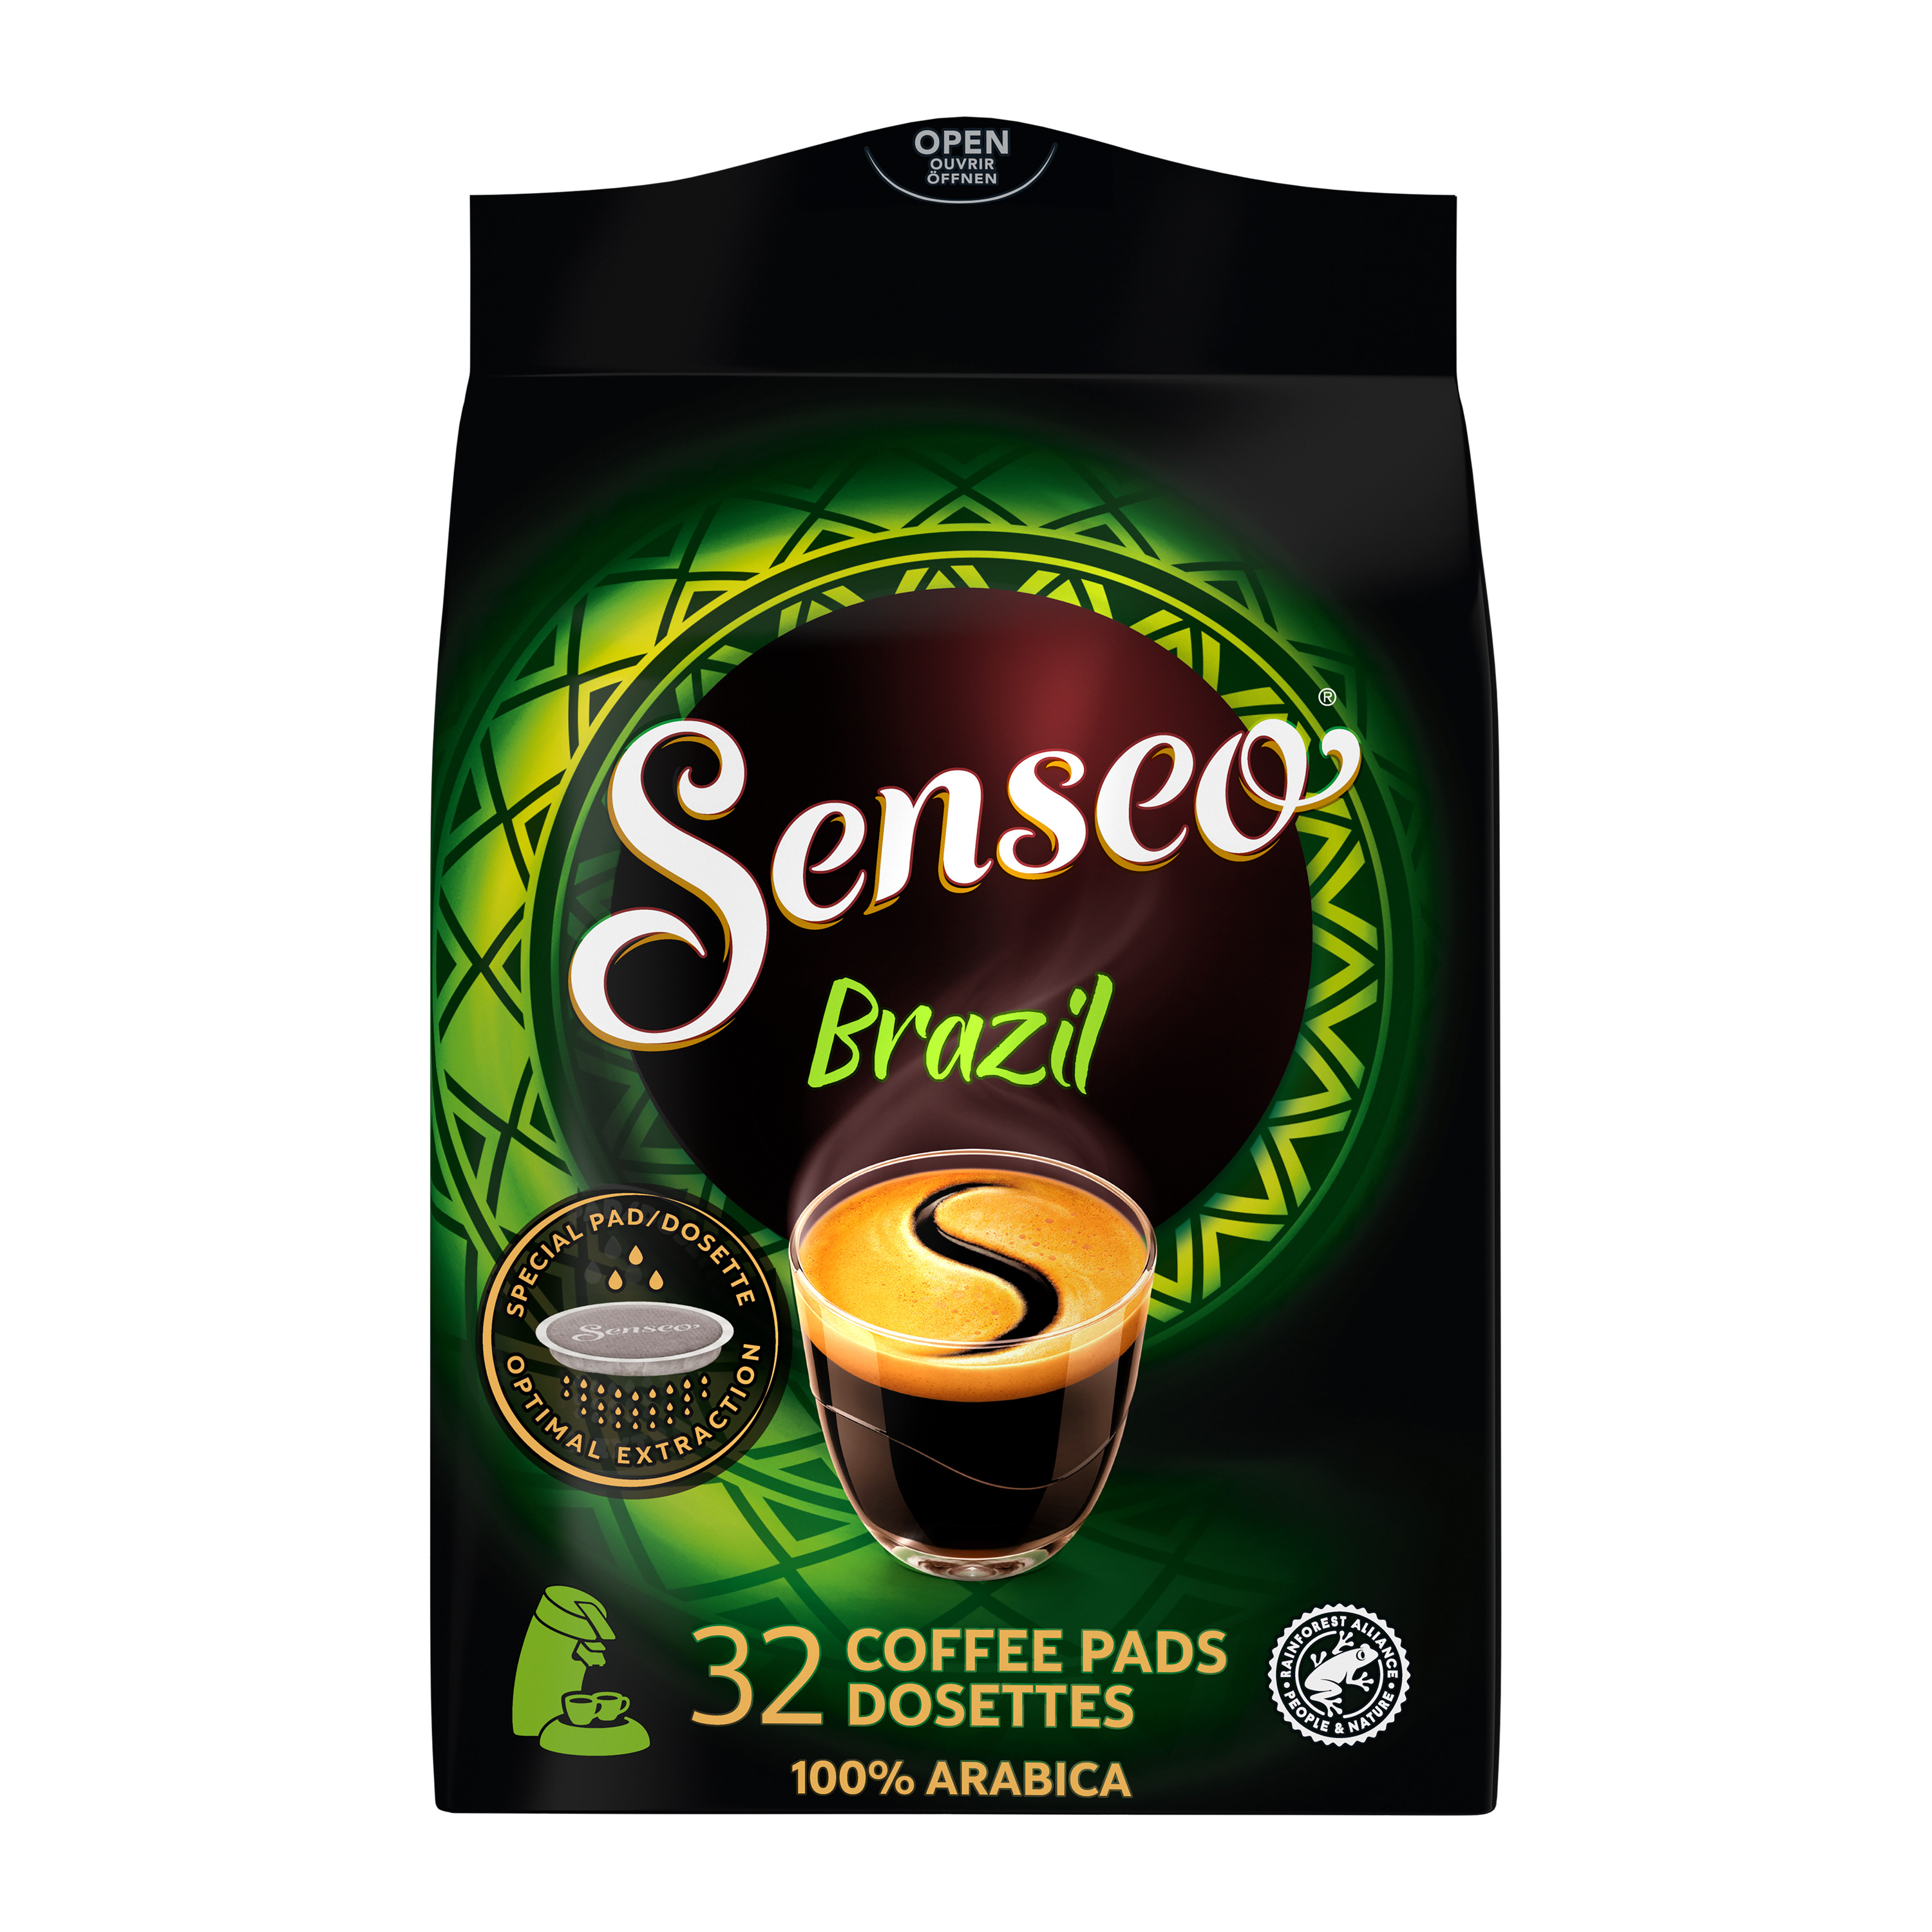 AUCHAN Dosettes de café doux intensité 3 compatibles Senseo 36